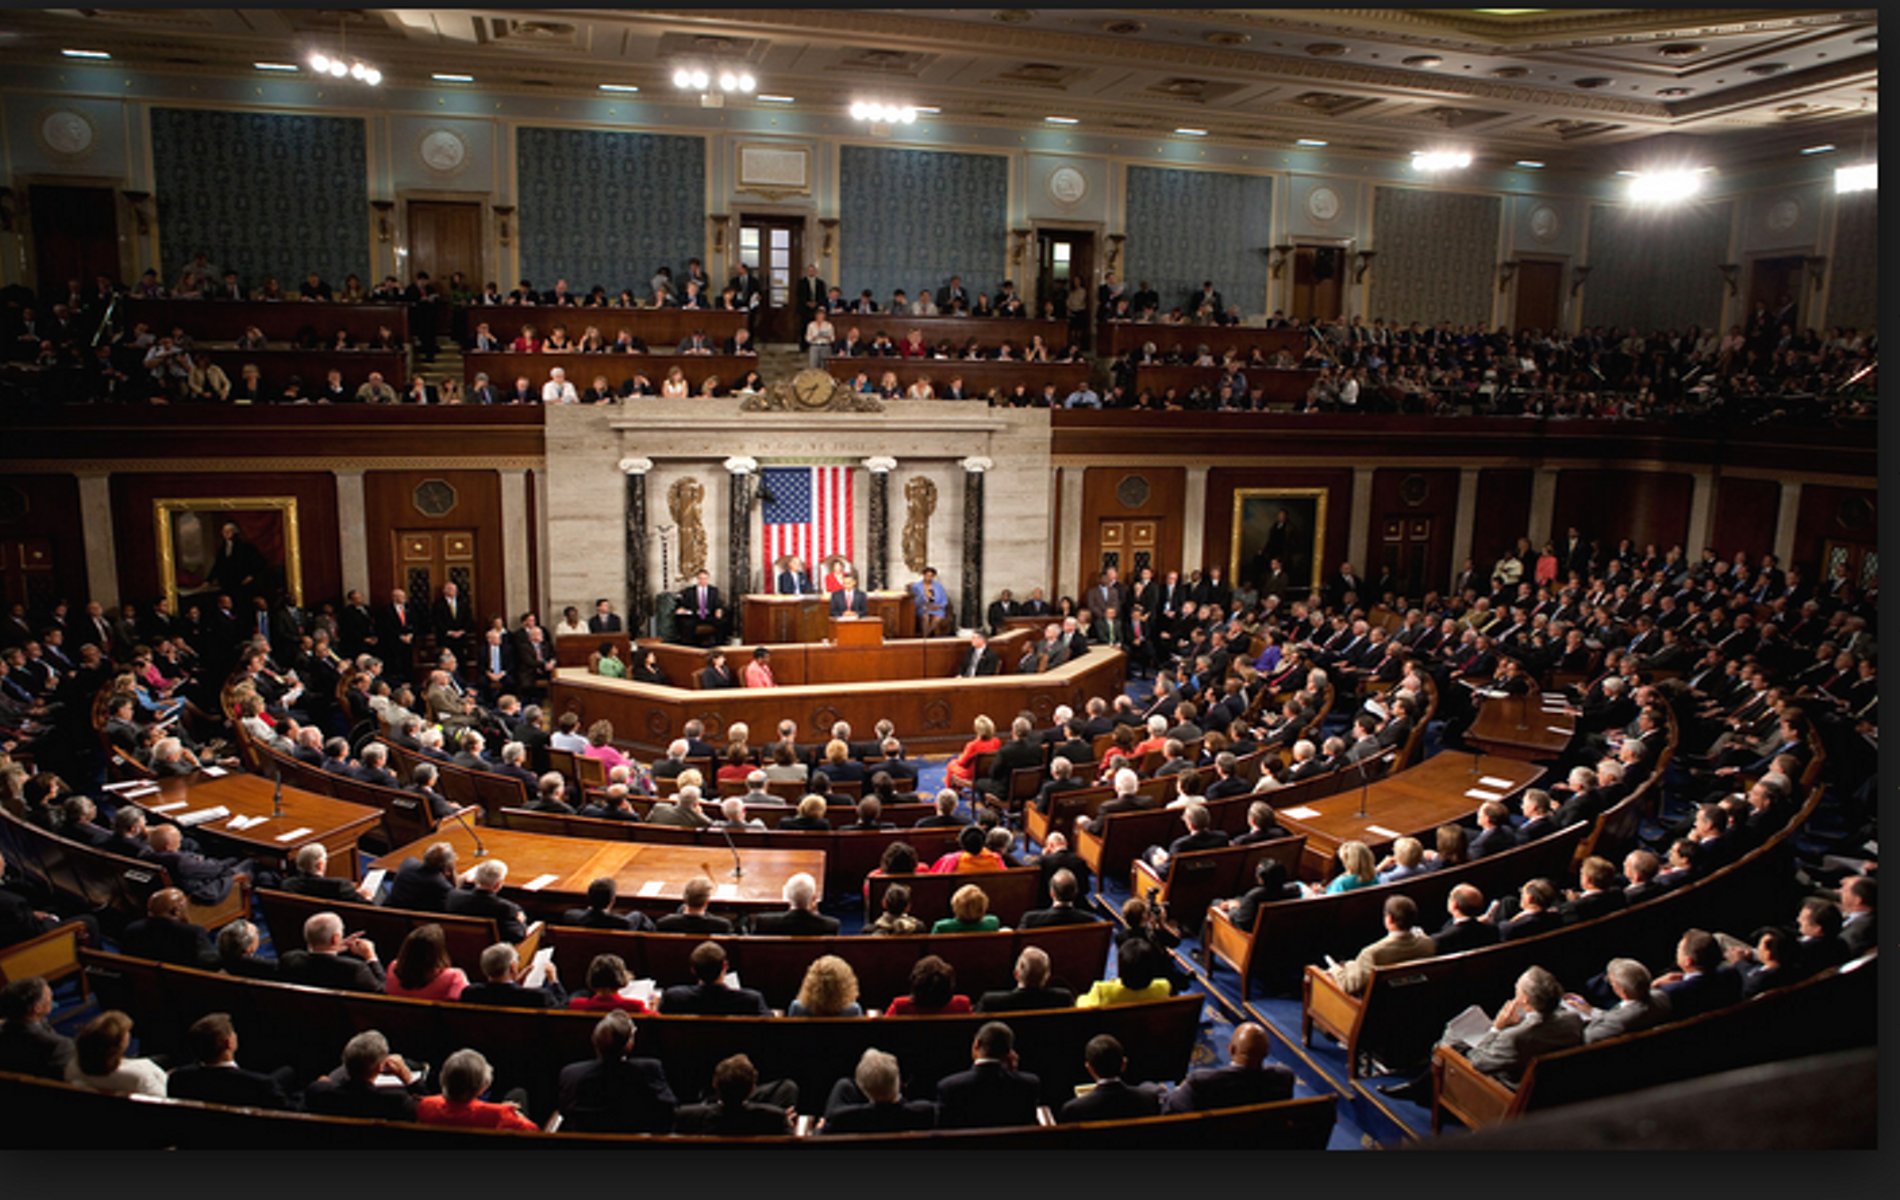 ΗΠΑ: Η αμερικανική Γερουσία υπερψήφισε το μεγάλο μεταρρυθμιστικό πρόγραμμα του Τζο Μπάιντεν για το Κλίμα και την Υγεία